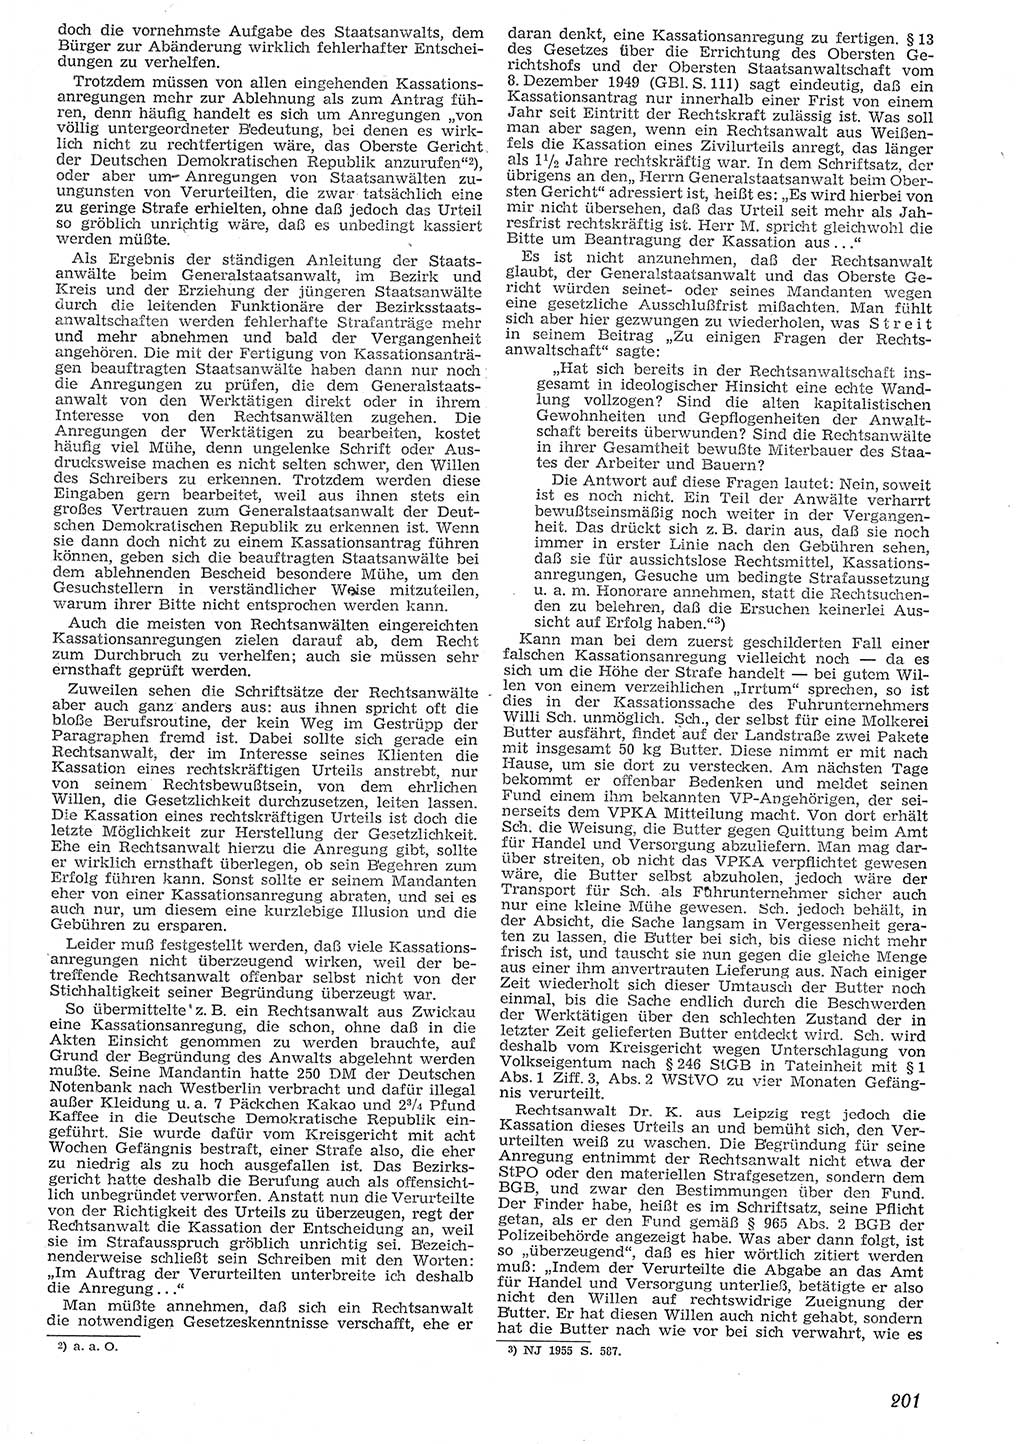 Neue Justiz (NJ), Zeitschrift für Recht und Rechtswissenschaft [Deutsche Demokratische Republik (DDR)], 10. Jahrgang 1956, Seite 201 (NJ DDR 1956, S. 201)